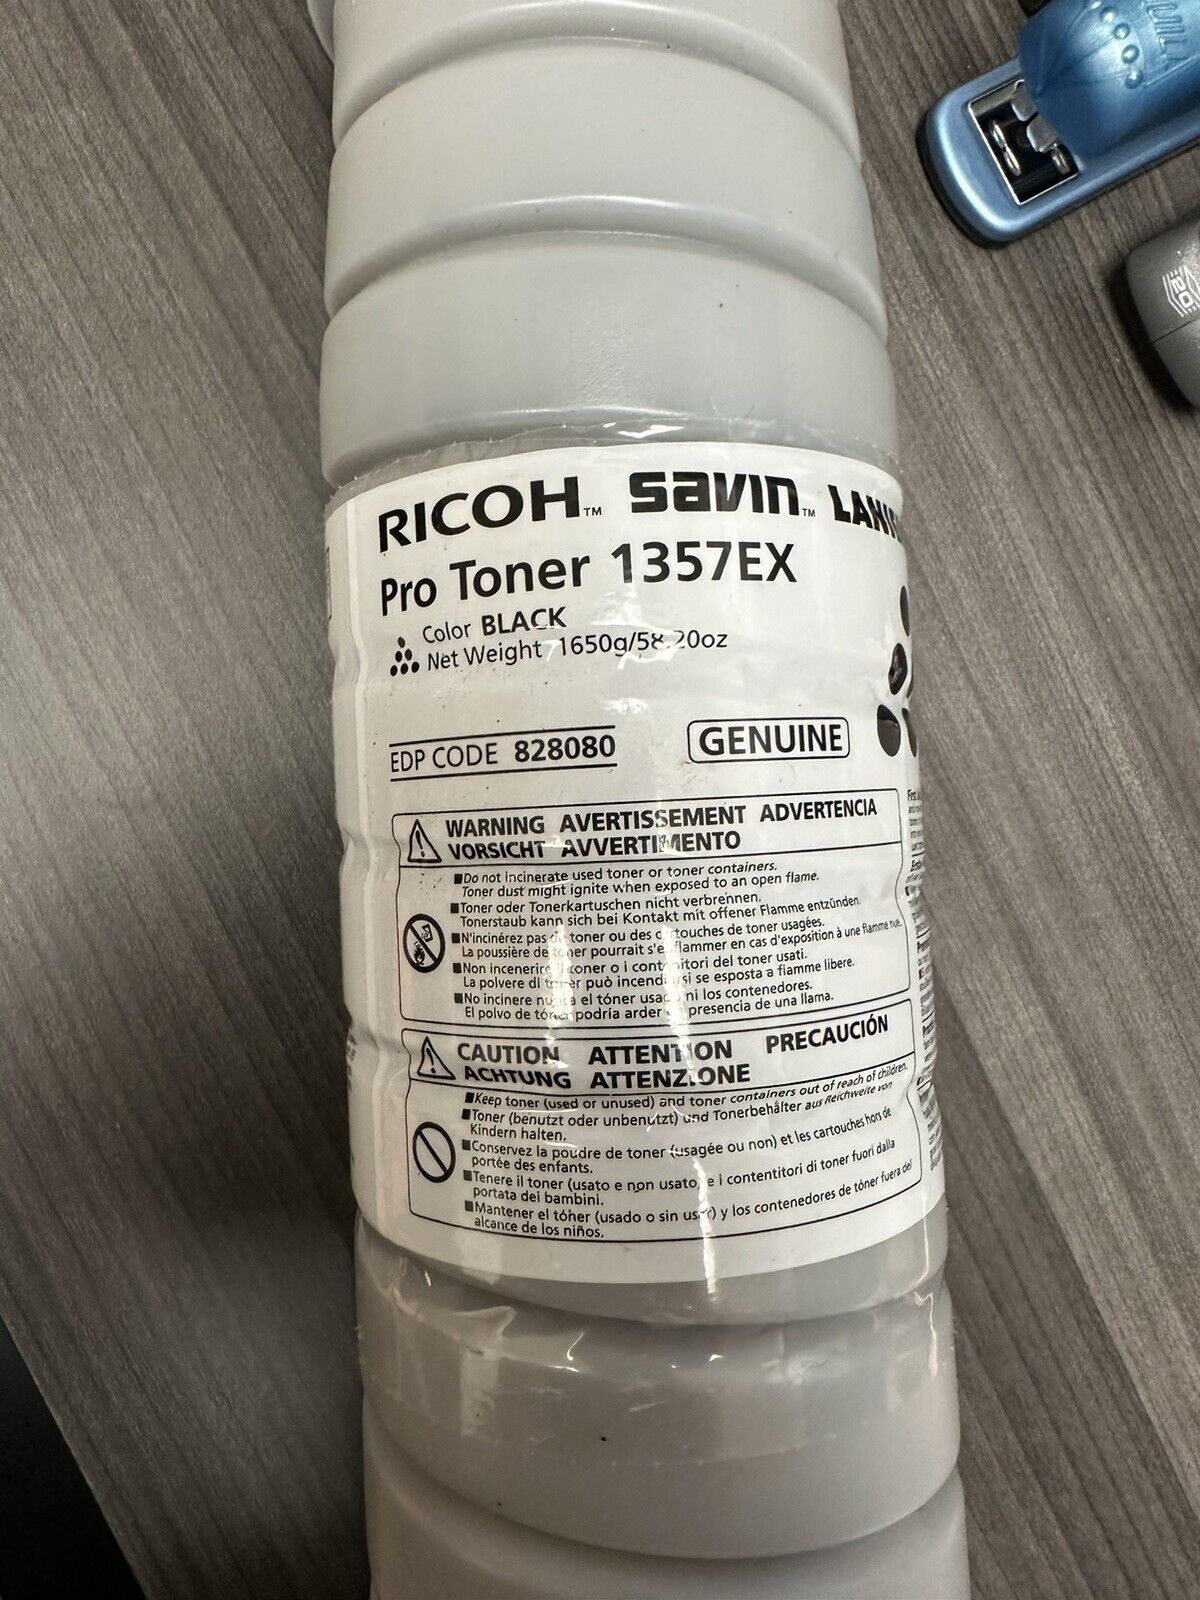 Ricoh 828080 Black Toner Cartridge for Pro 1357EX